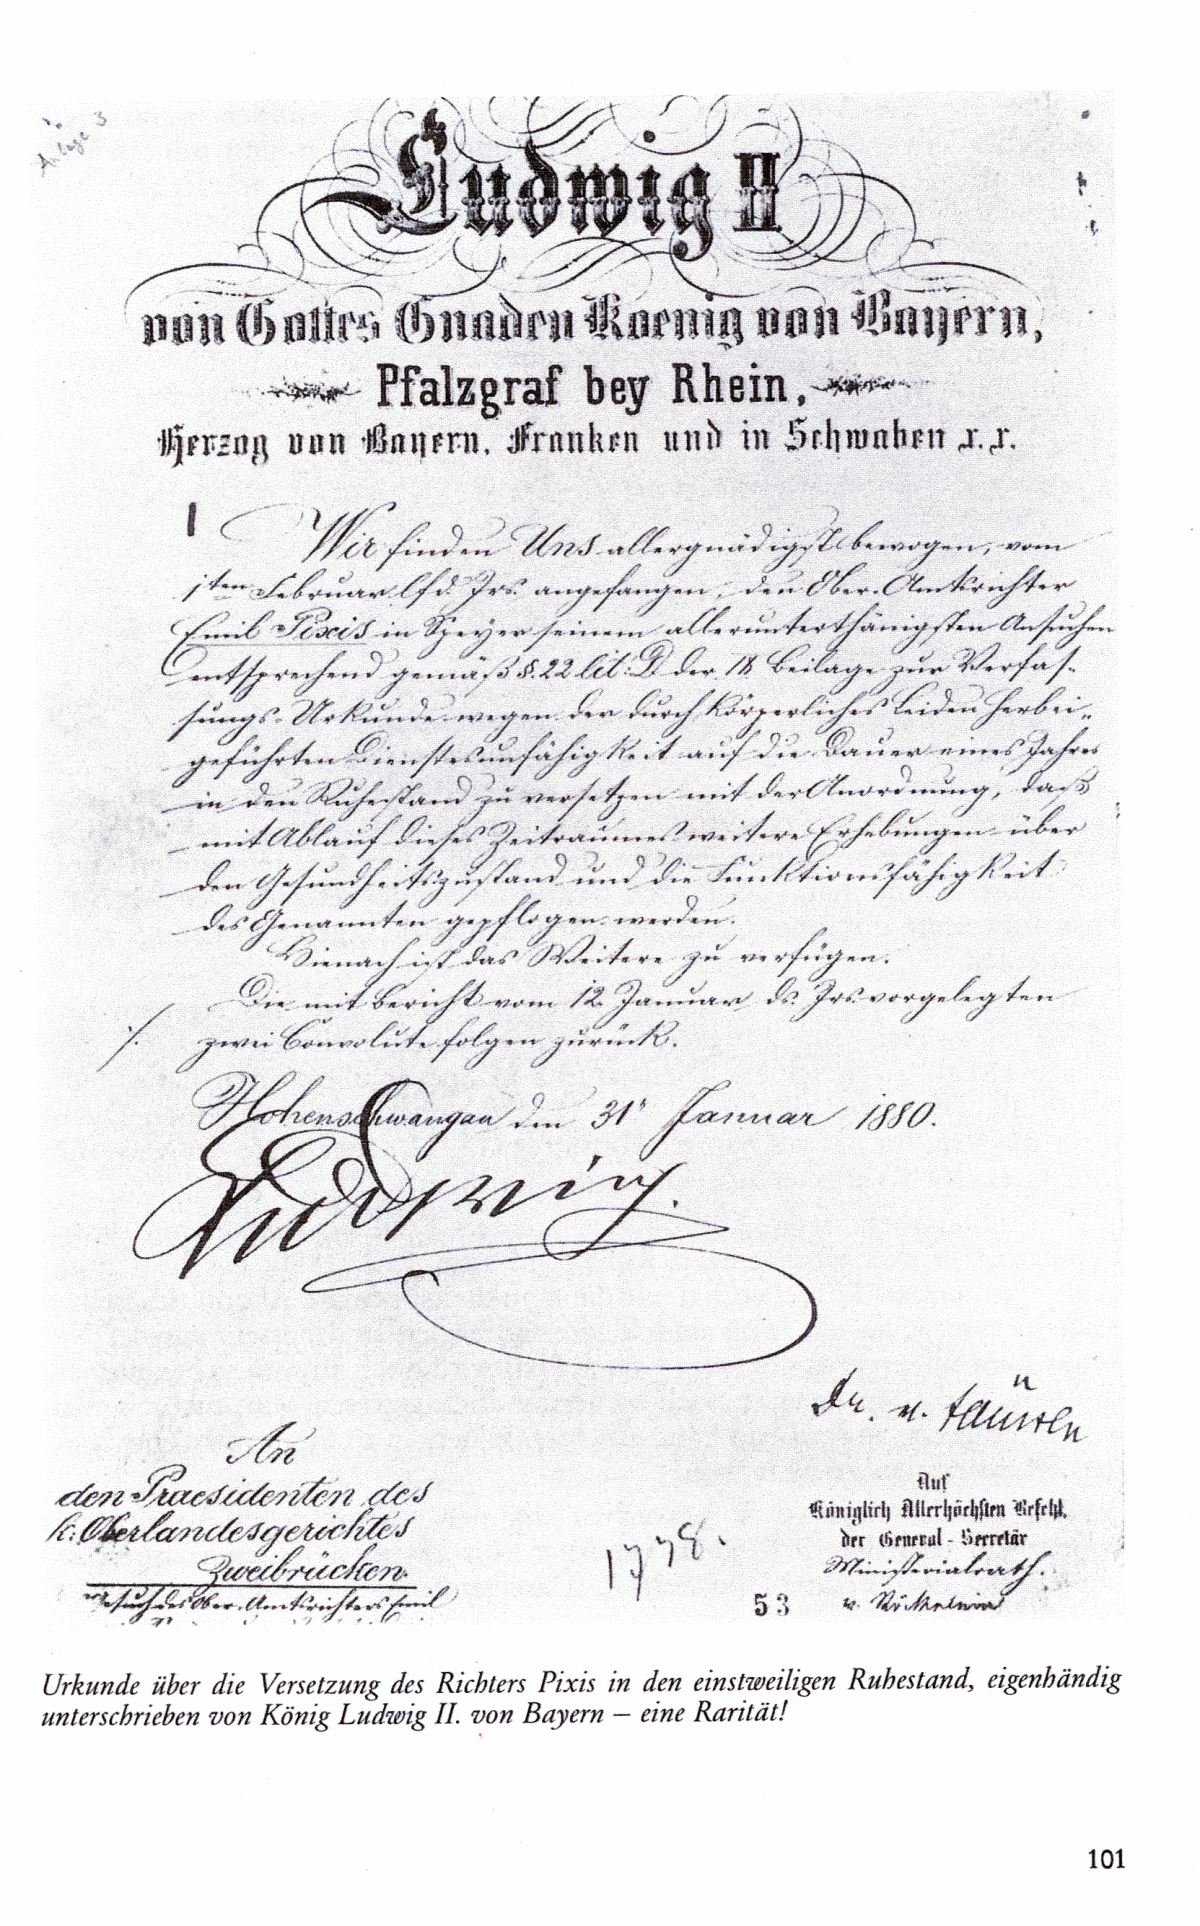 Urkunde von König Ludwig von Bayern